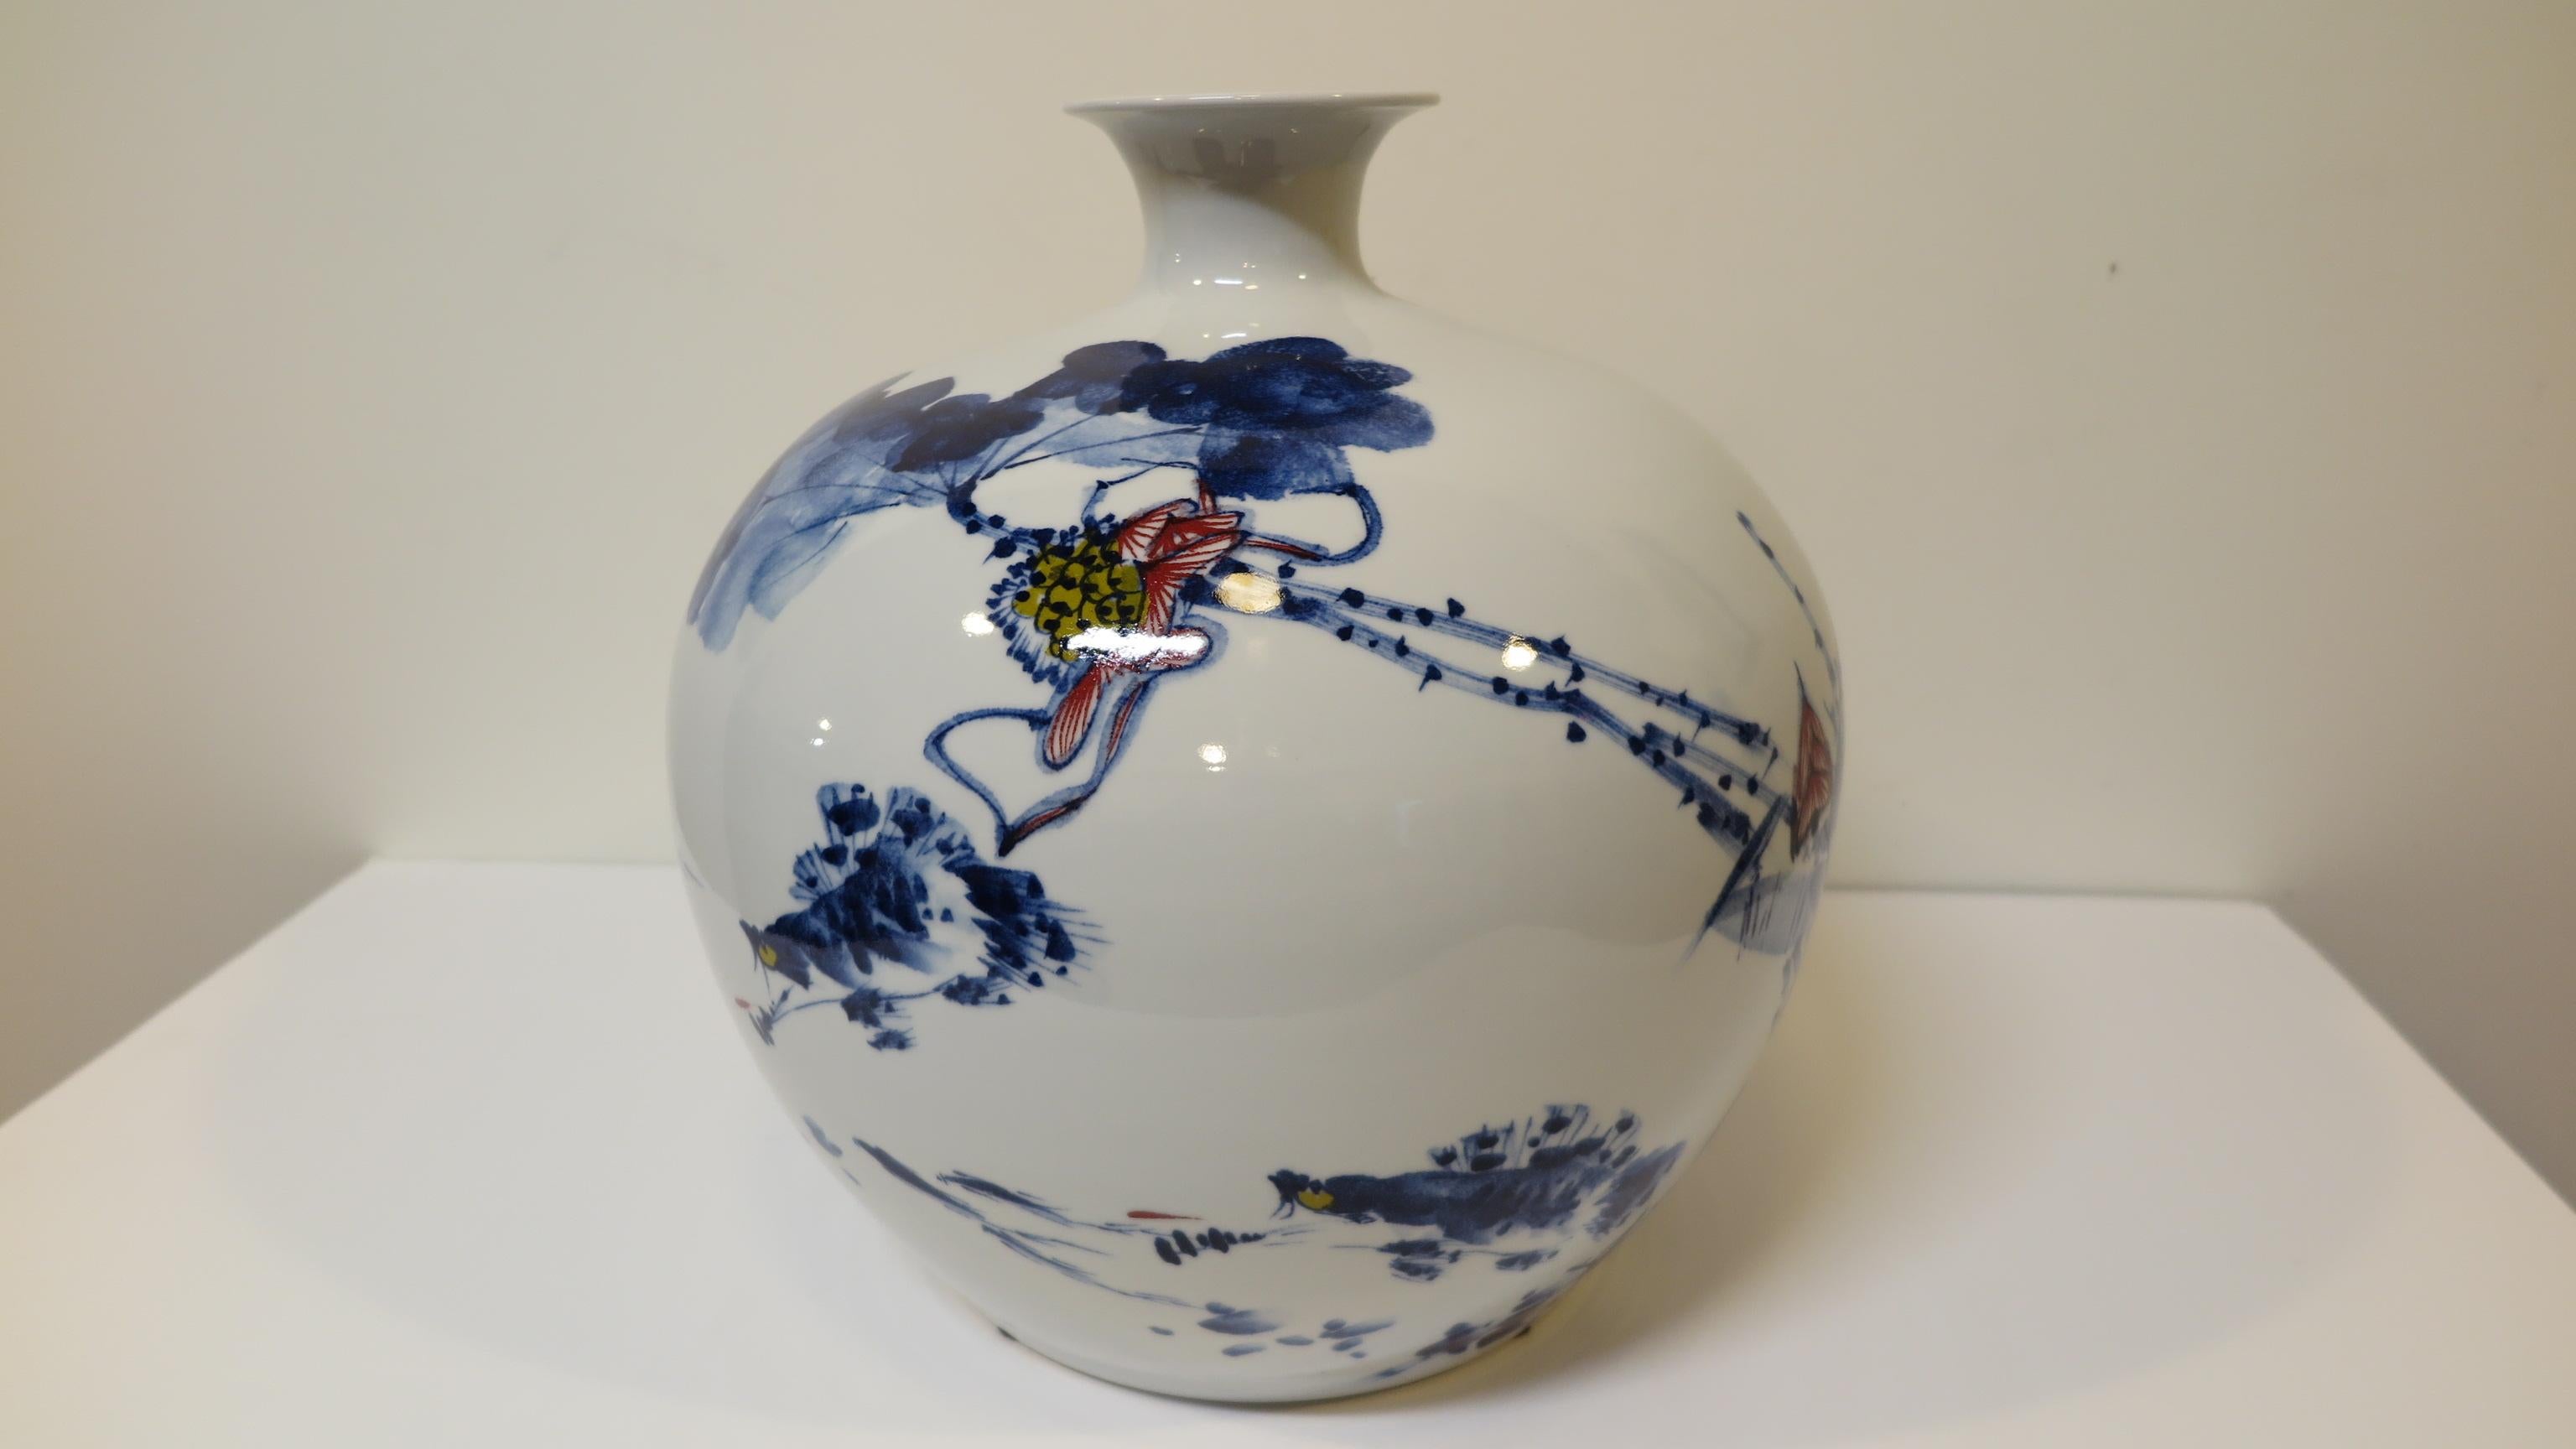 Artisan Porzellan Vase Vessel Hand geformt von Qualität hoch gebrannten feinem Porzellan. Wunderschöne Form mit Indigobemalung, komplett handgefertigt. Künstlersigniert mit Gedicht.